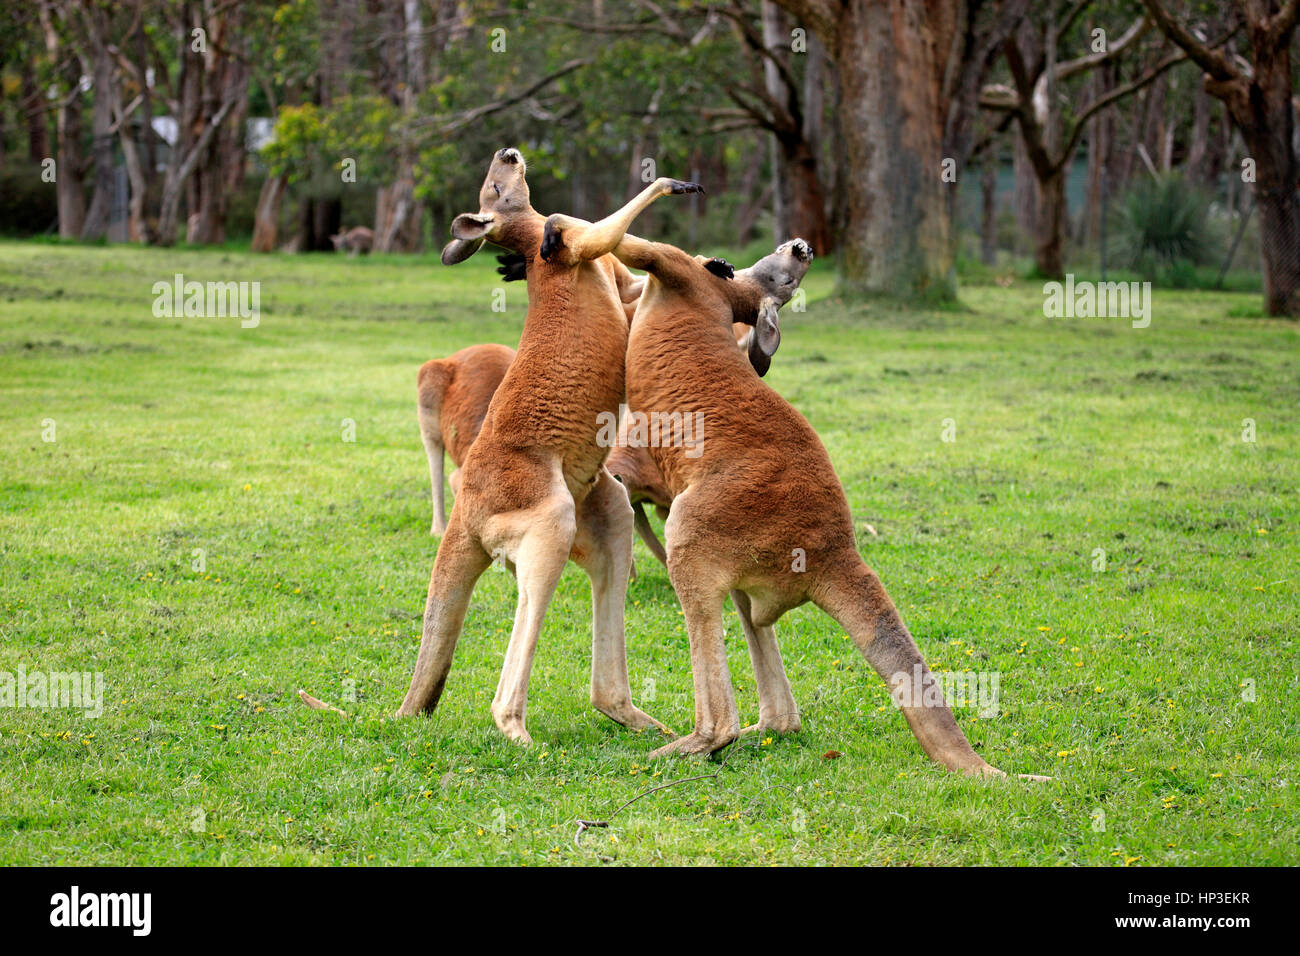 Kangourou rouge, (Macropus rufus), deux mâles adultes, lutte contre l'Australie du Sud, Australlia Banque D'Images